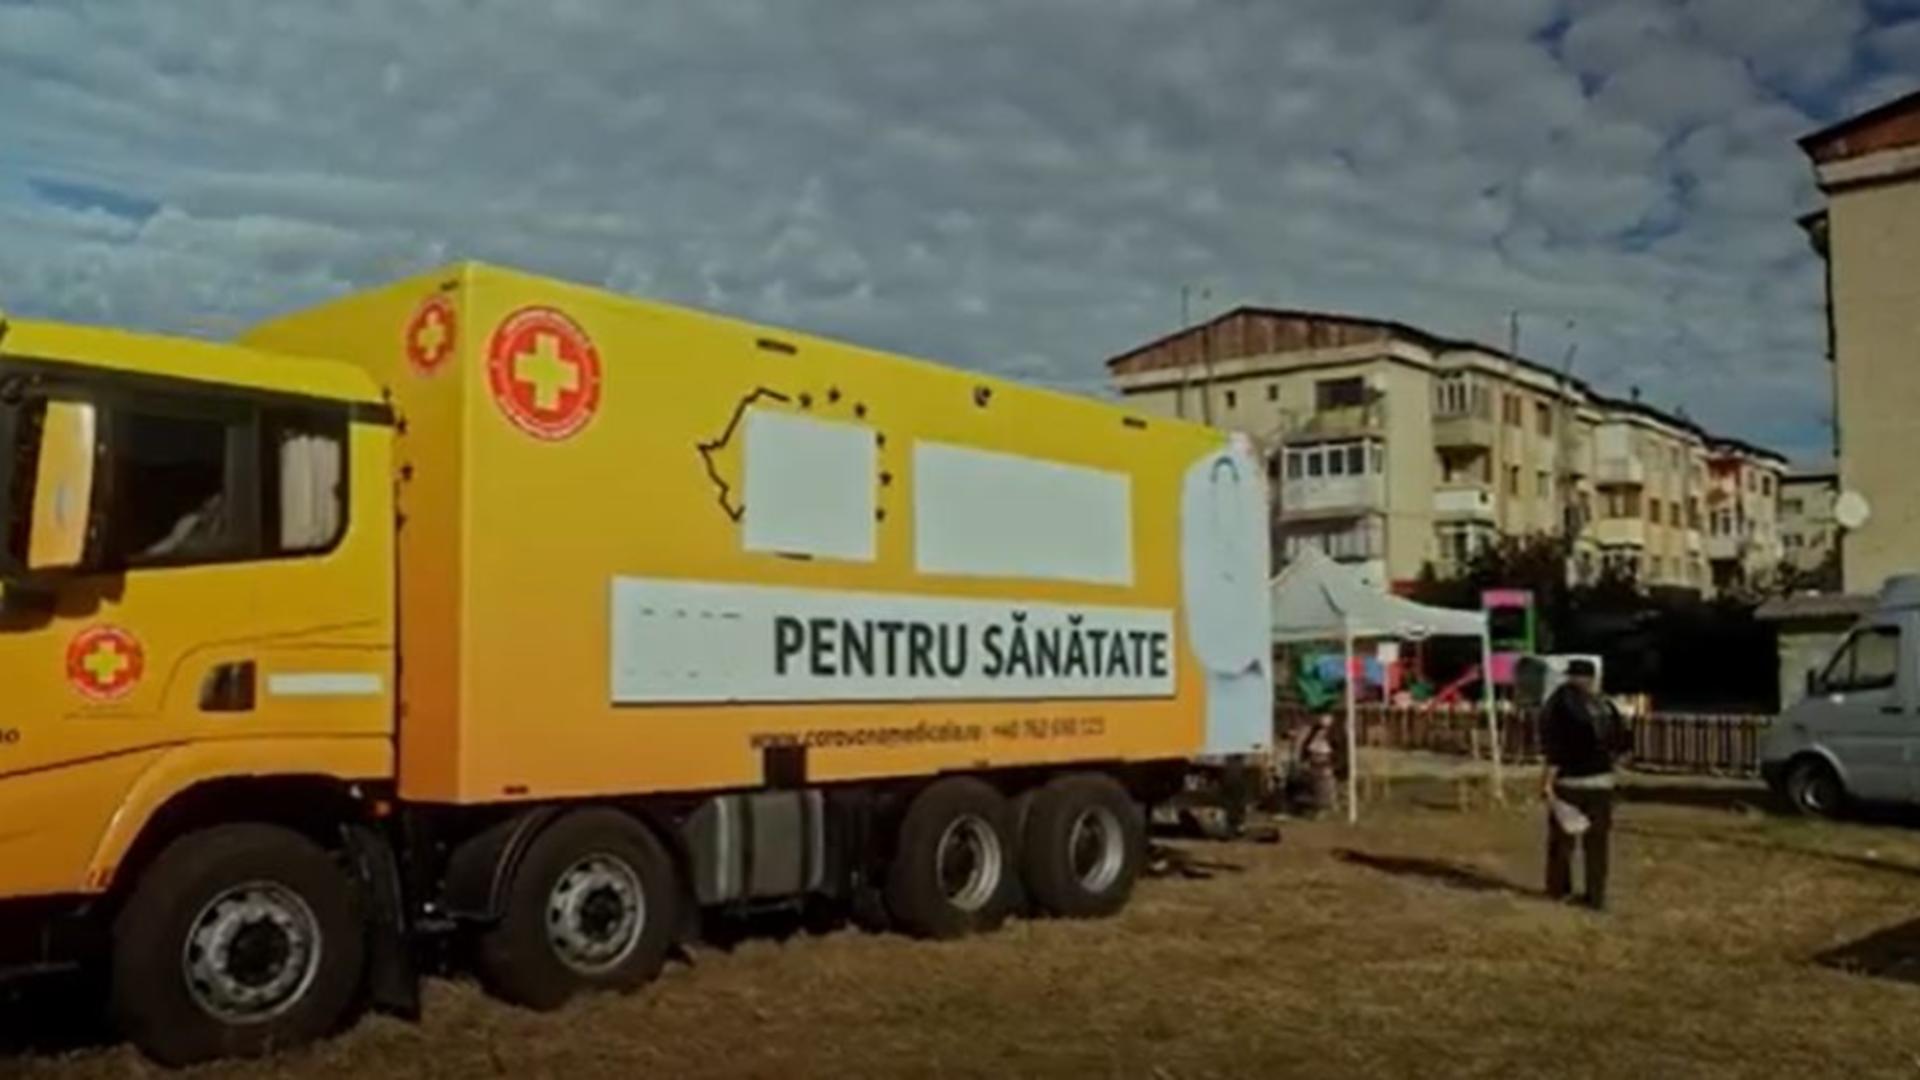 Caravana România Suverană cu spitalul mobil AUR au ajuns în Olt – Mii de români primesc consultații gratuite chiar la ei în sat